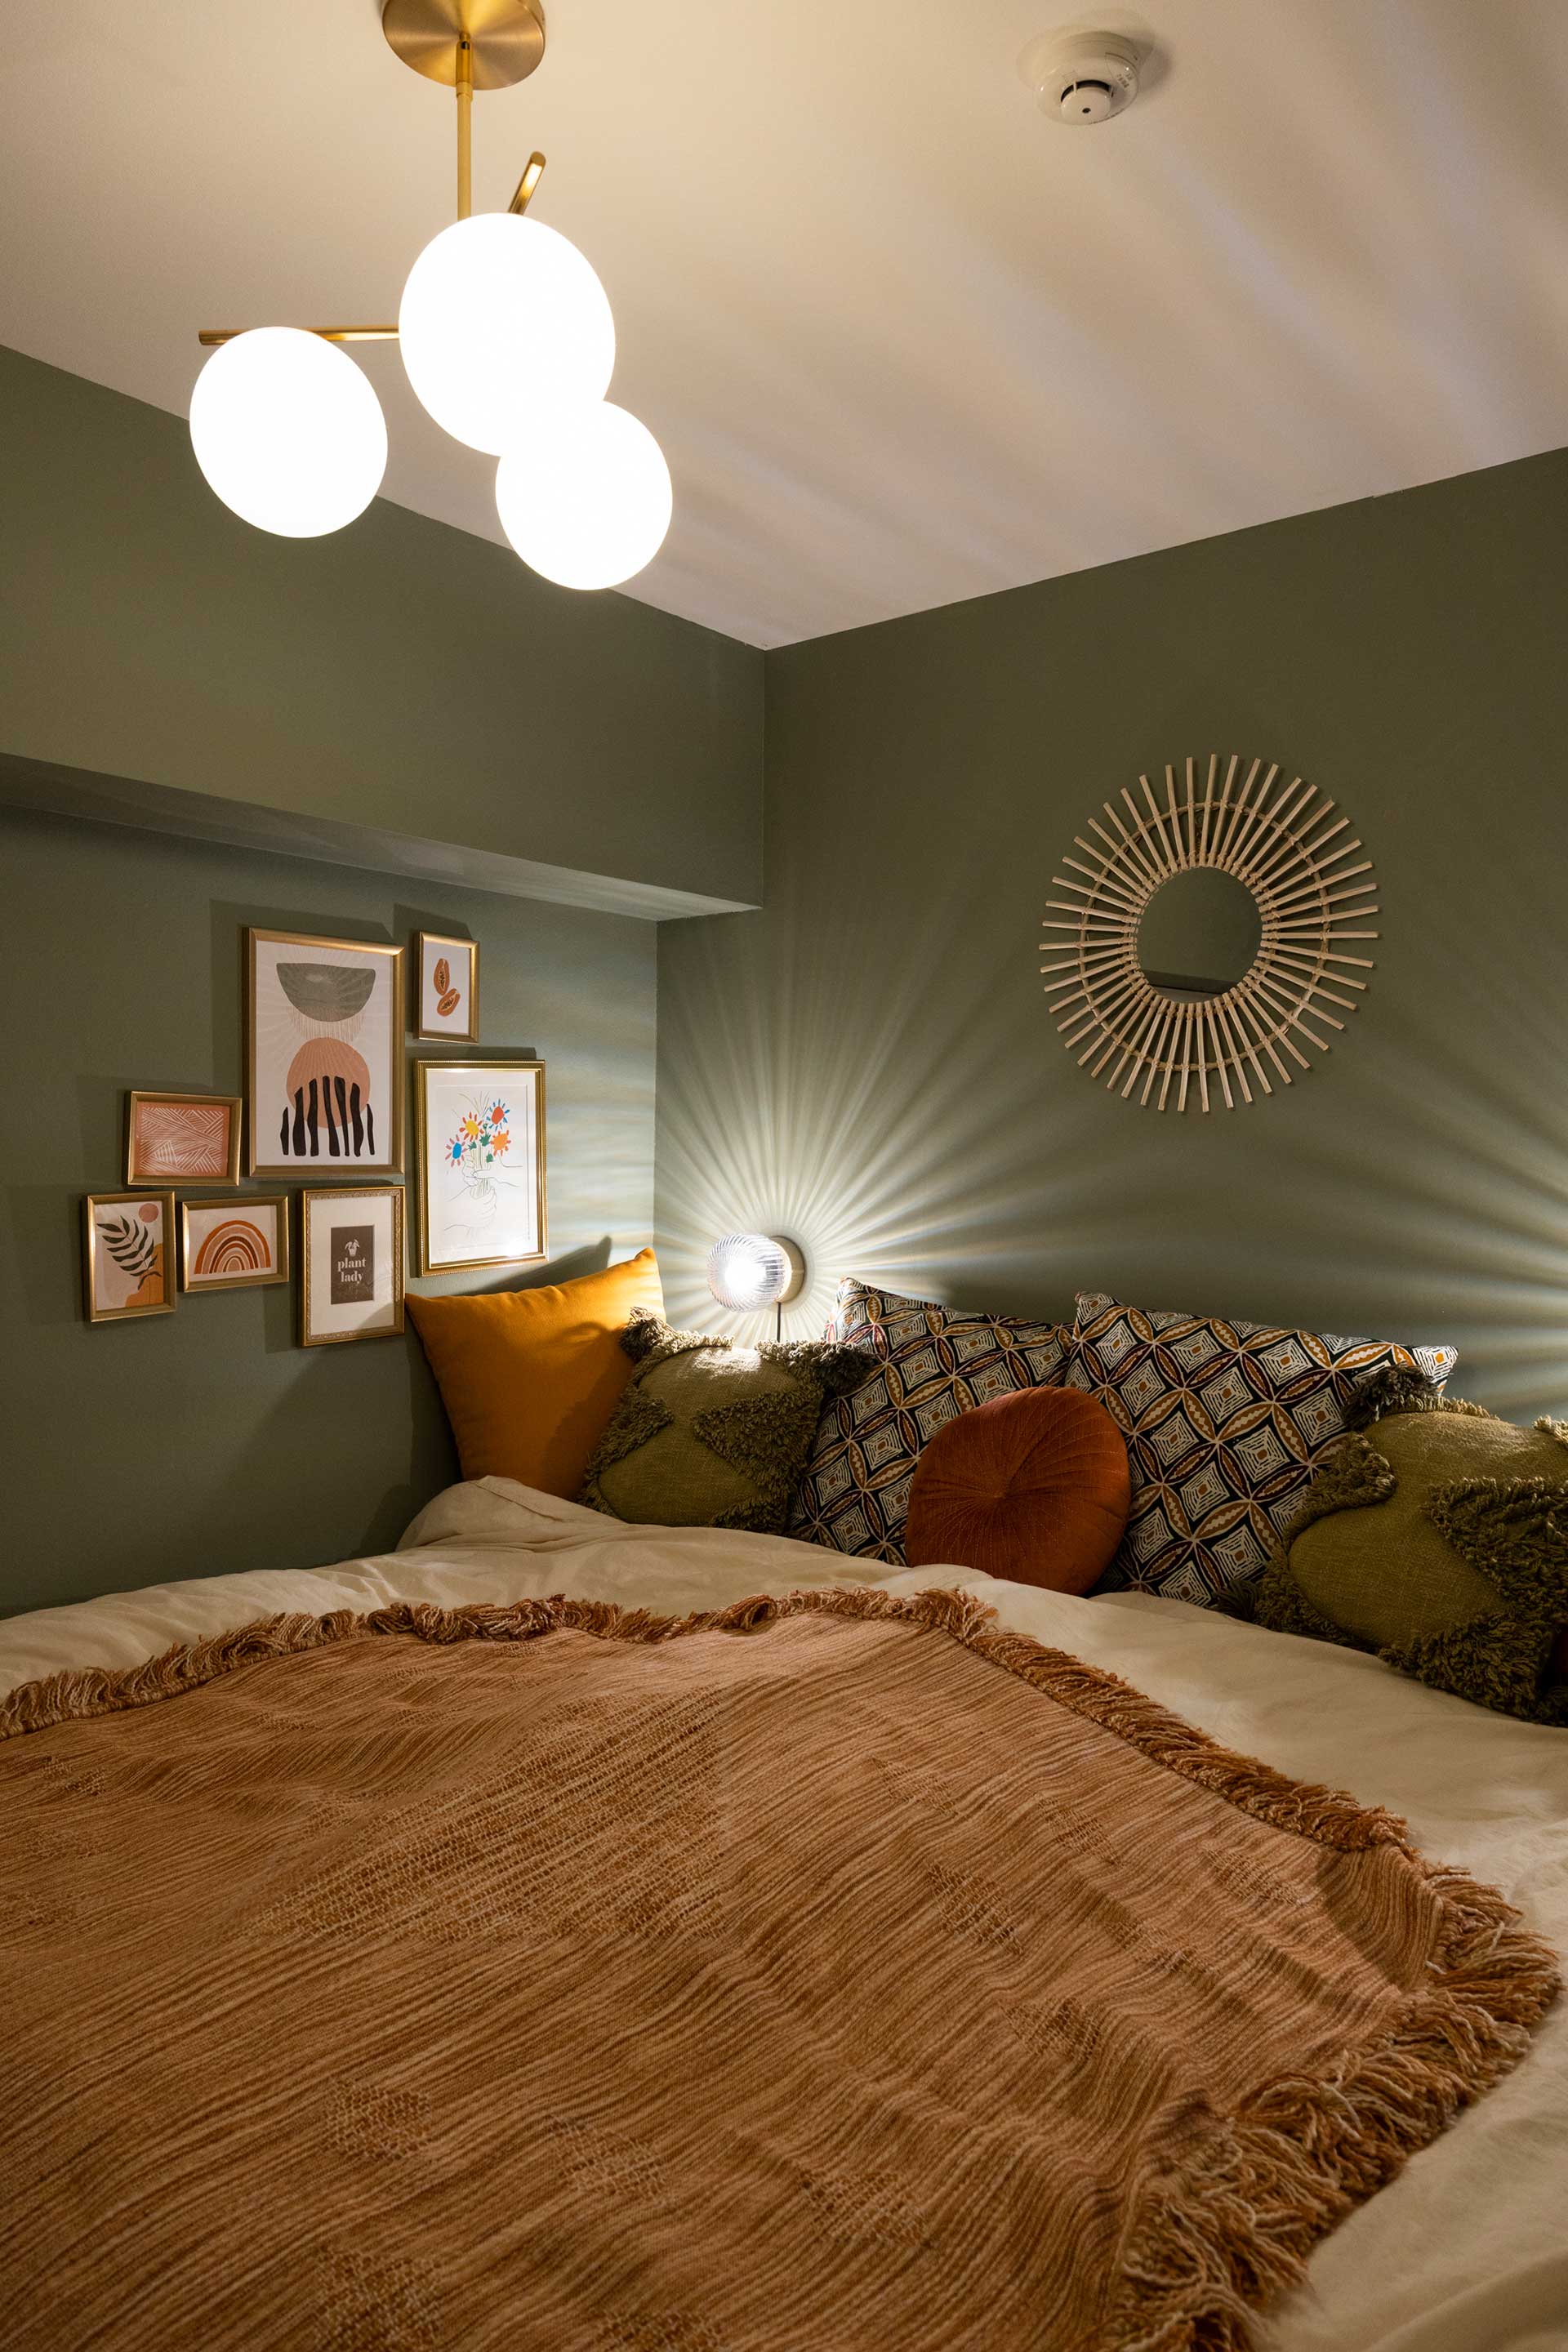 寝室の壁は落ち着いたグリーンに。照明器具は海外サイトで購入。「額は絵の色味をある程度合わせ、リズム良く飾ります」